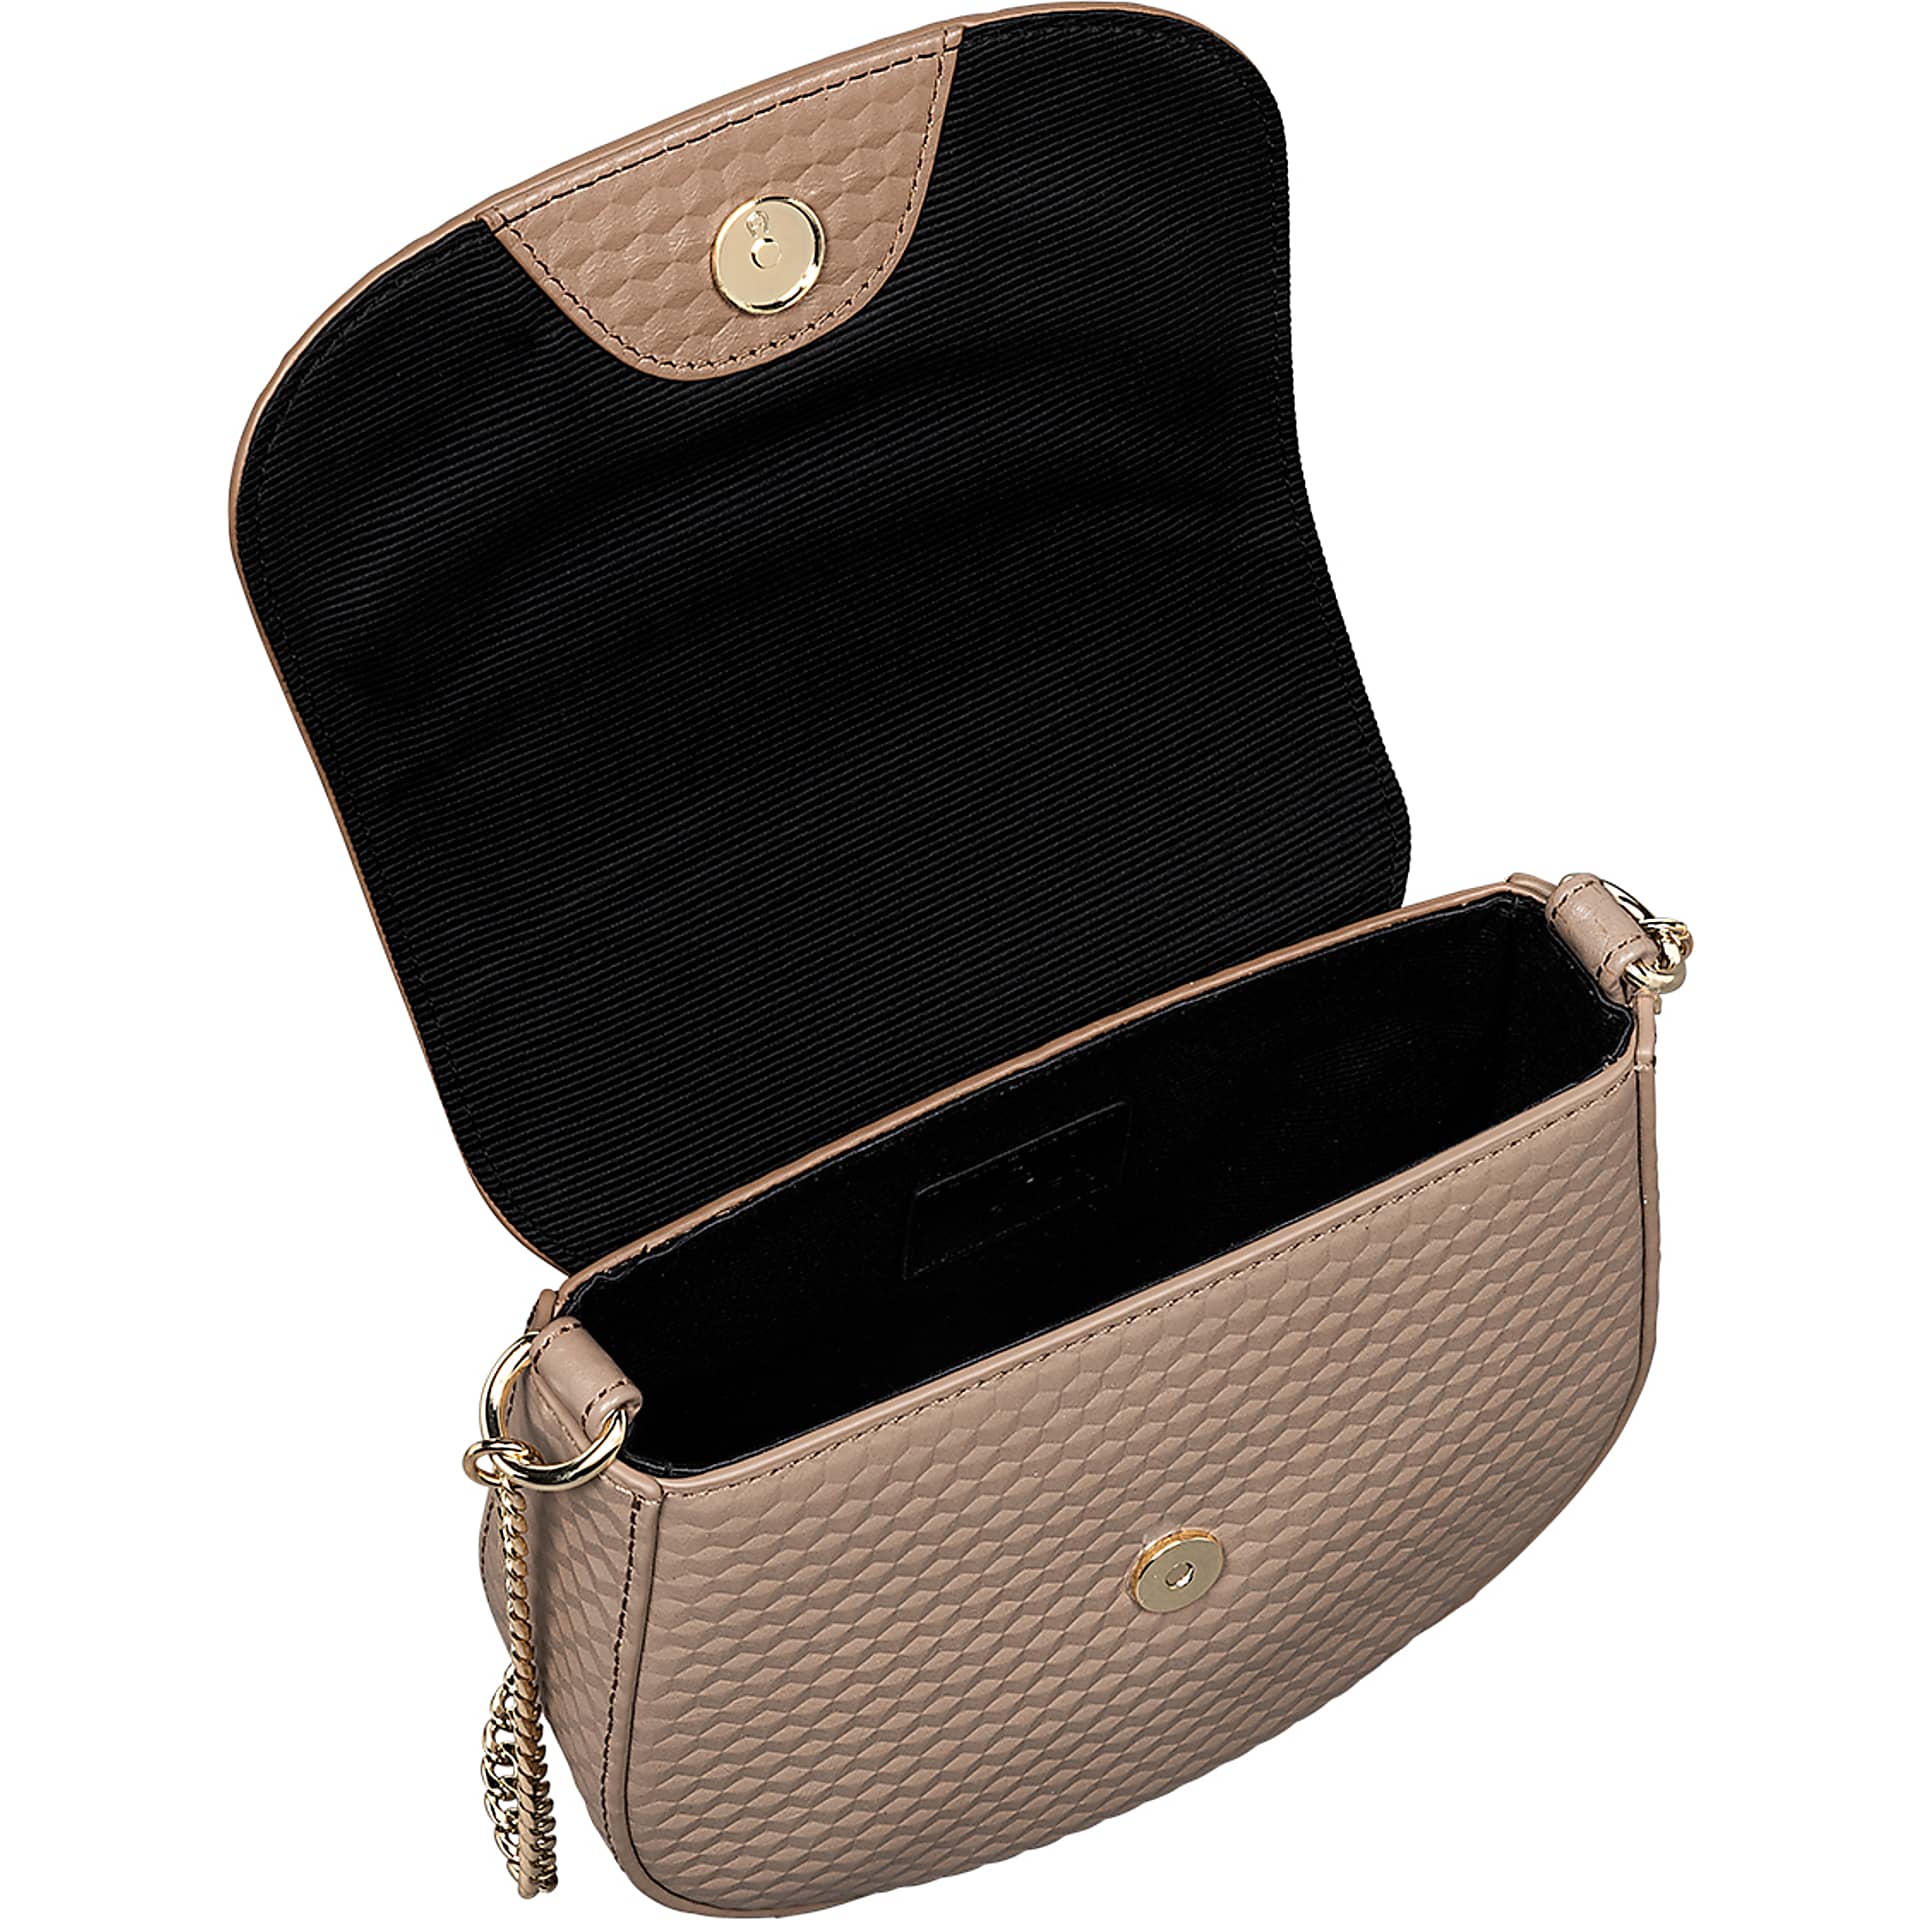 Ava shoulder bag Cube XS cashmere beige - Bags - Women - AIGNER Club